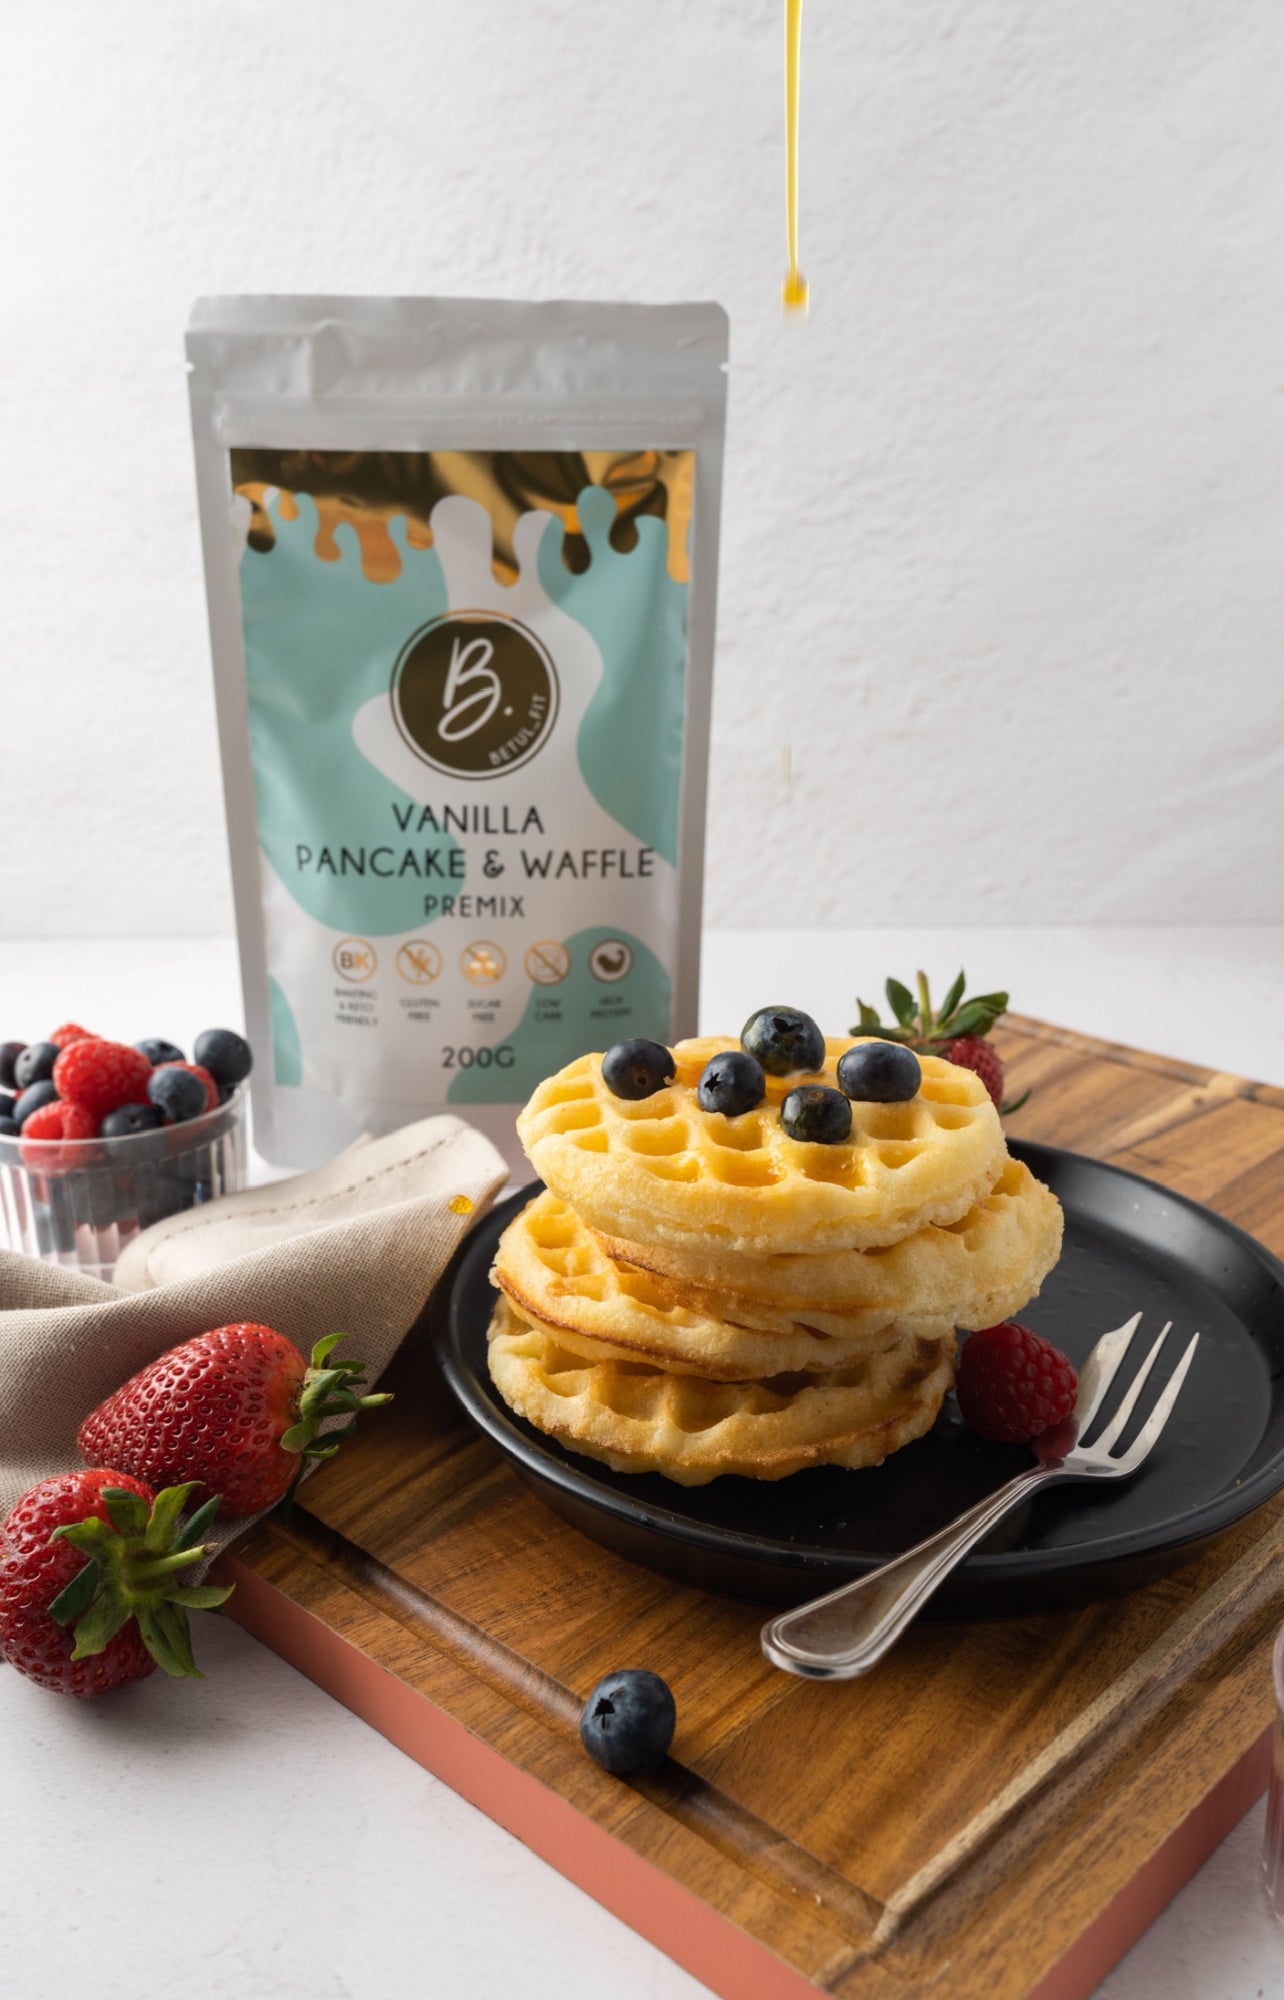 Vanilla Pancake & Waffle Premix